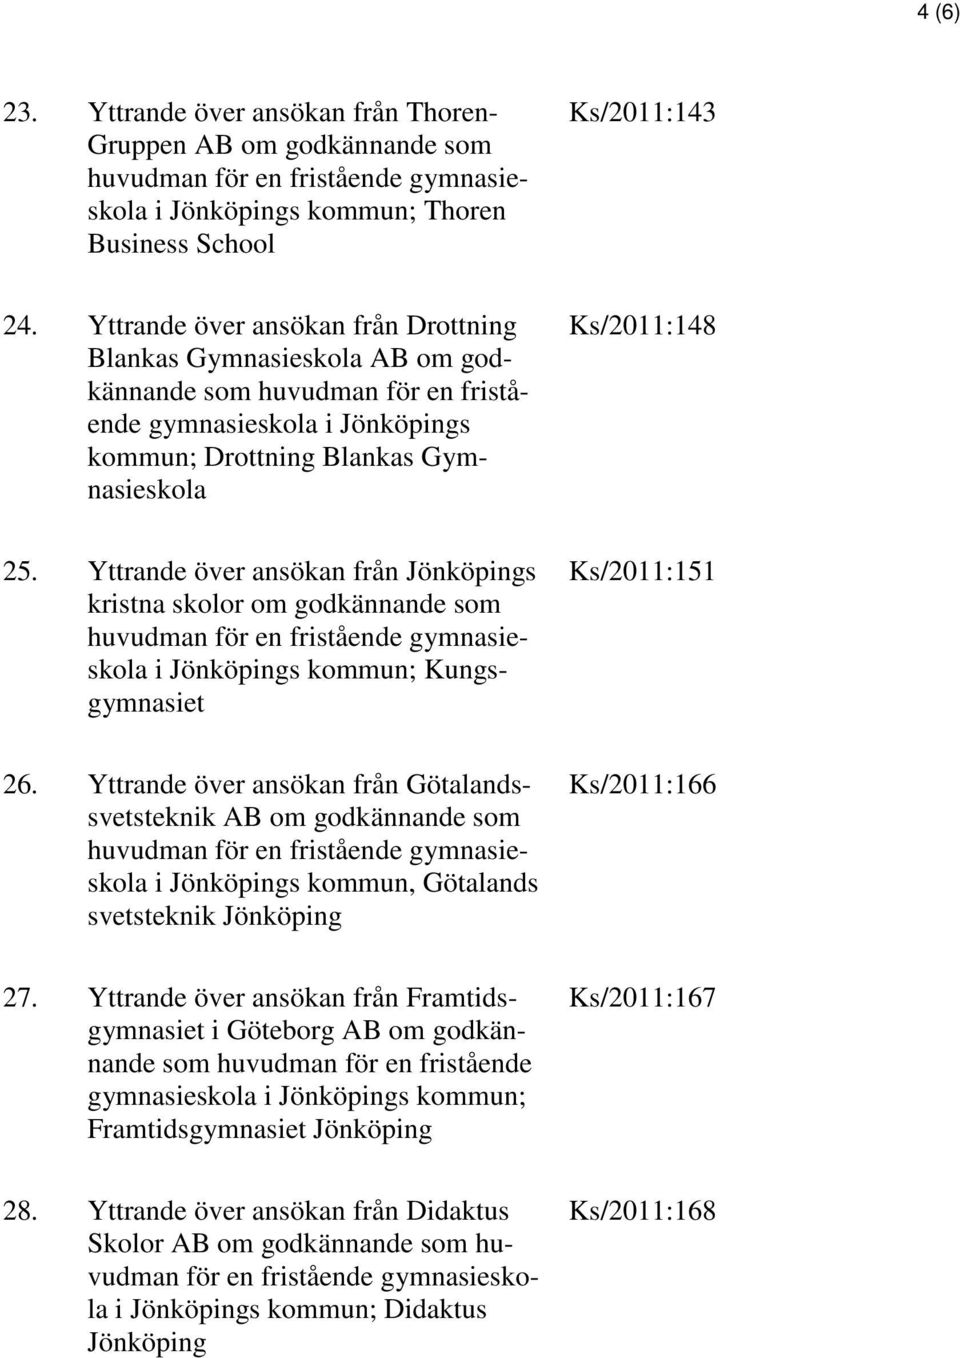 Yttrande över ansökan från Jönköpings kristna skolor om godkännande som i Jönköpings kommun; Kungsgymnasiet Ks/2011:151 26.